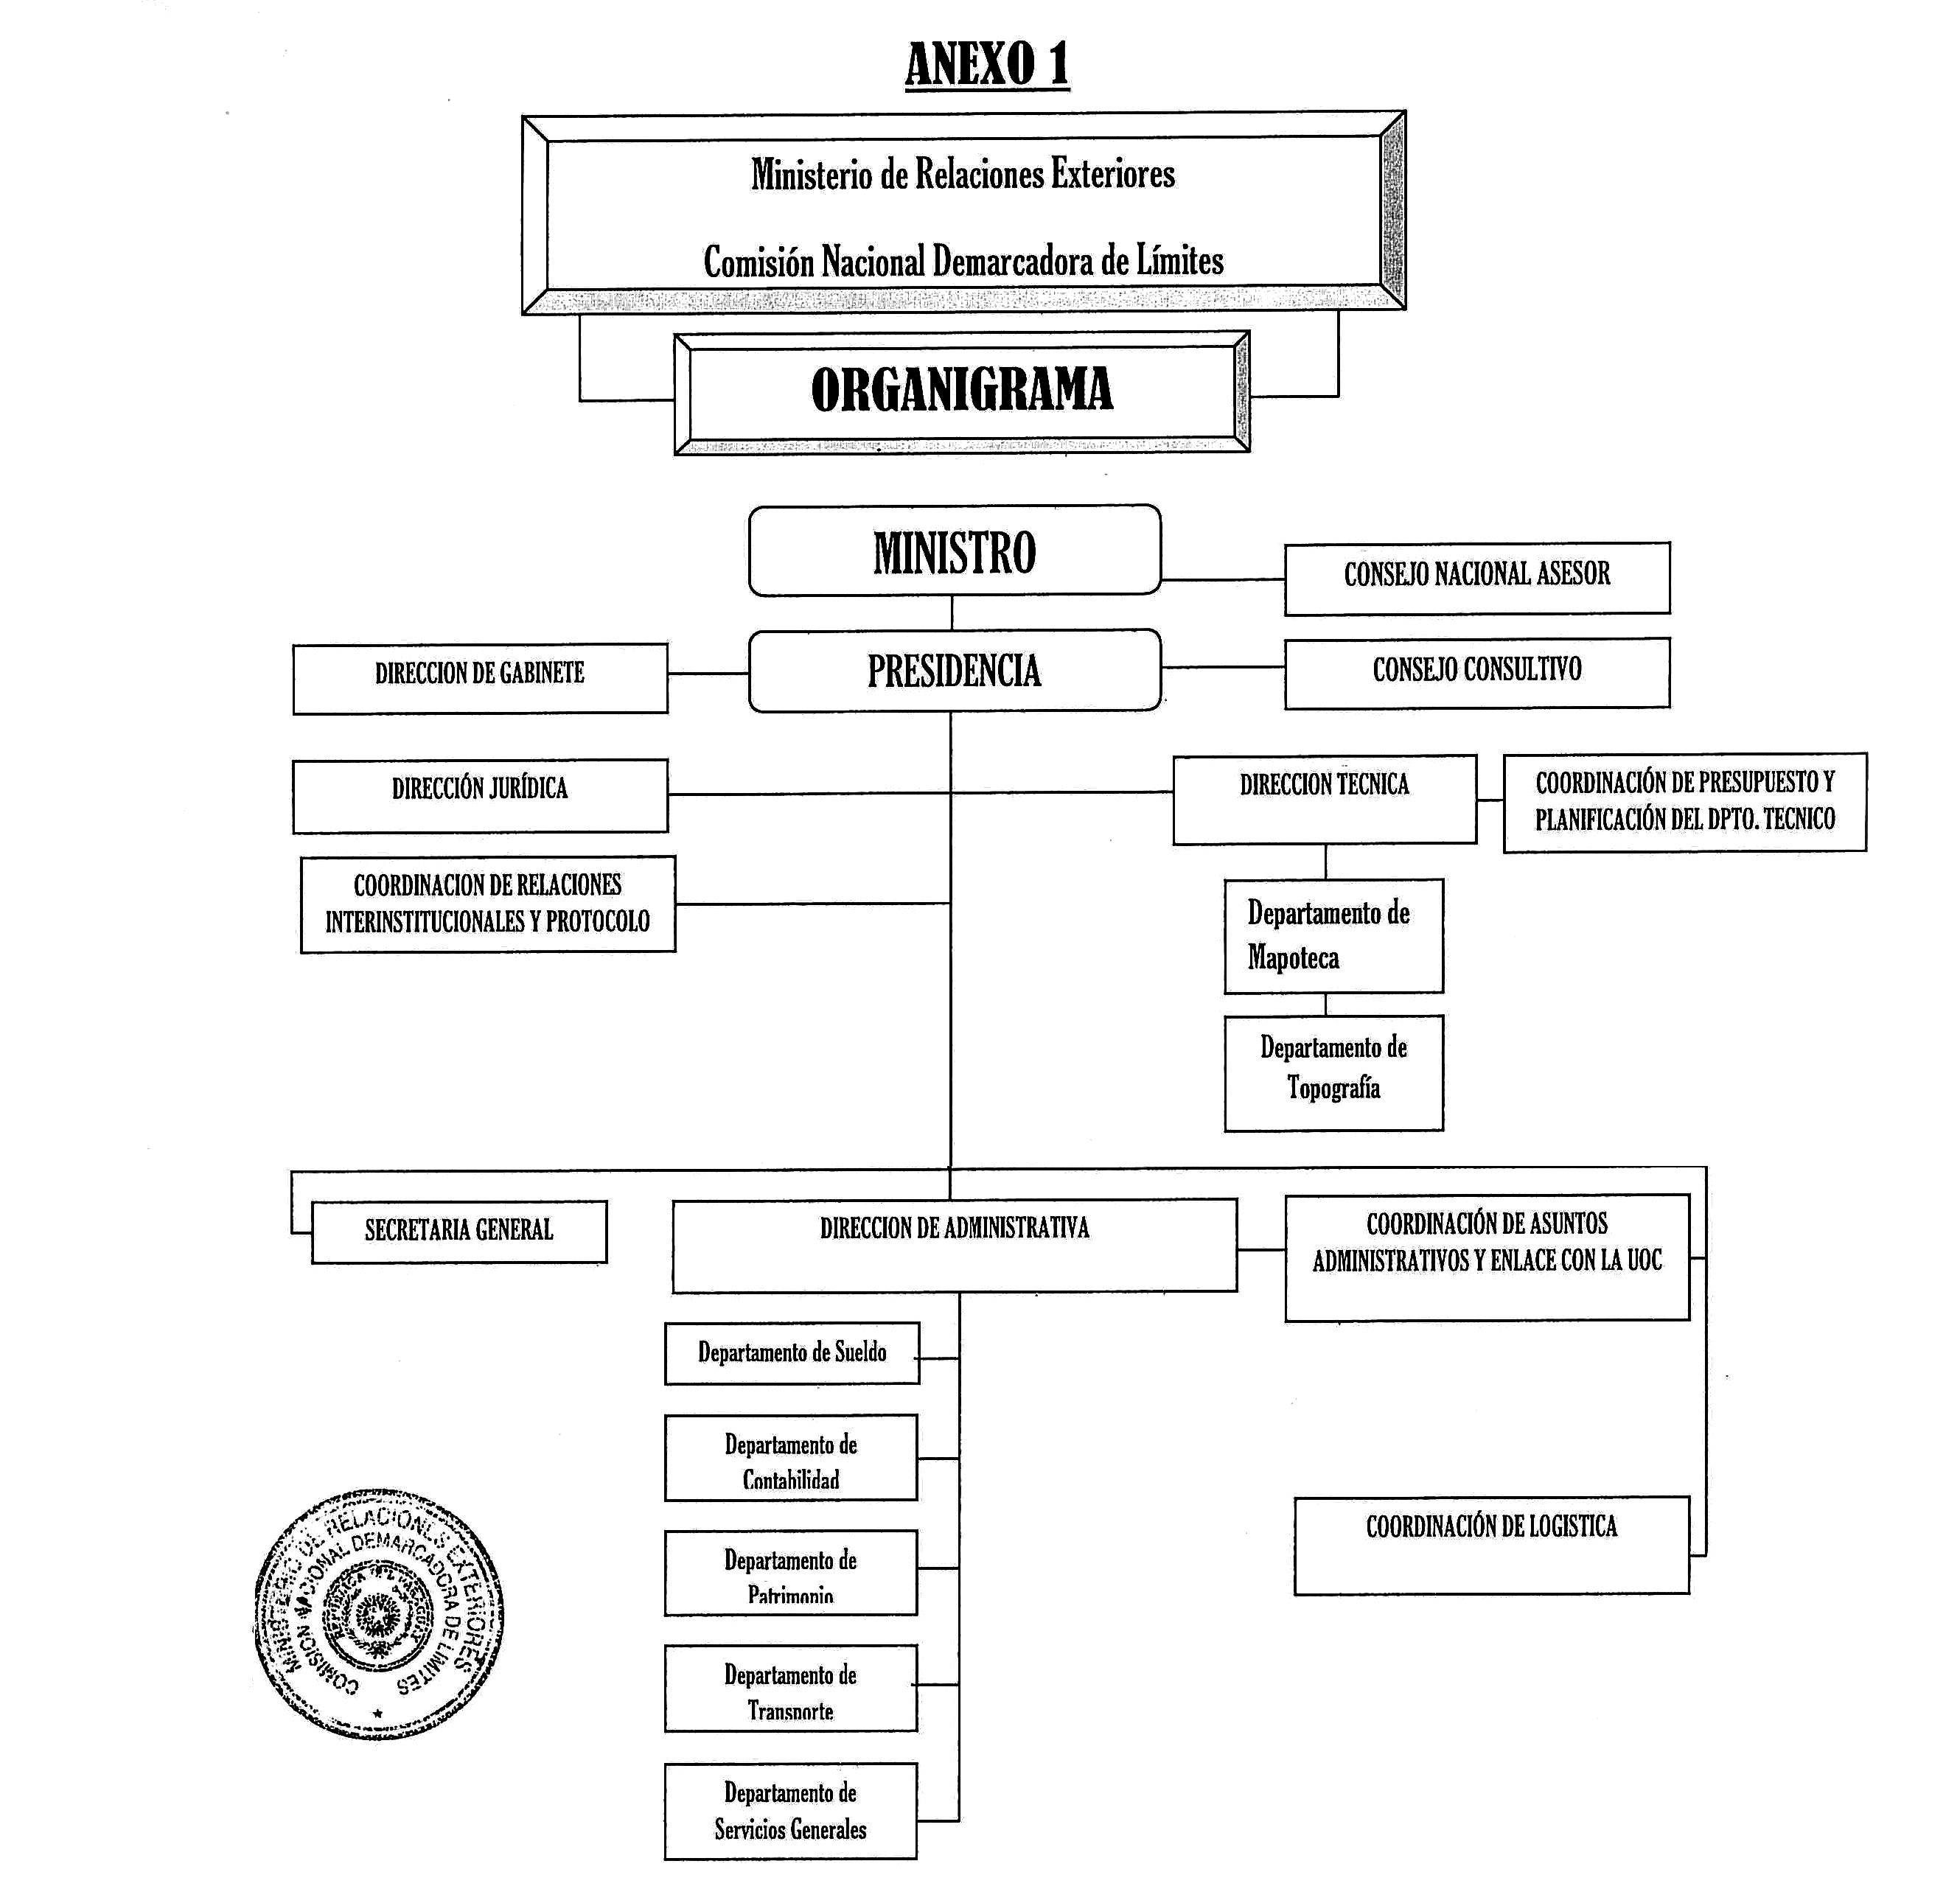 Organigrama de la CNDL - Versión Original- Resol 43-2014.jpg